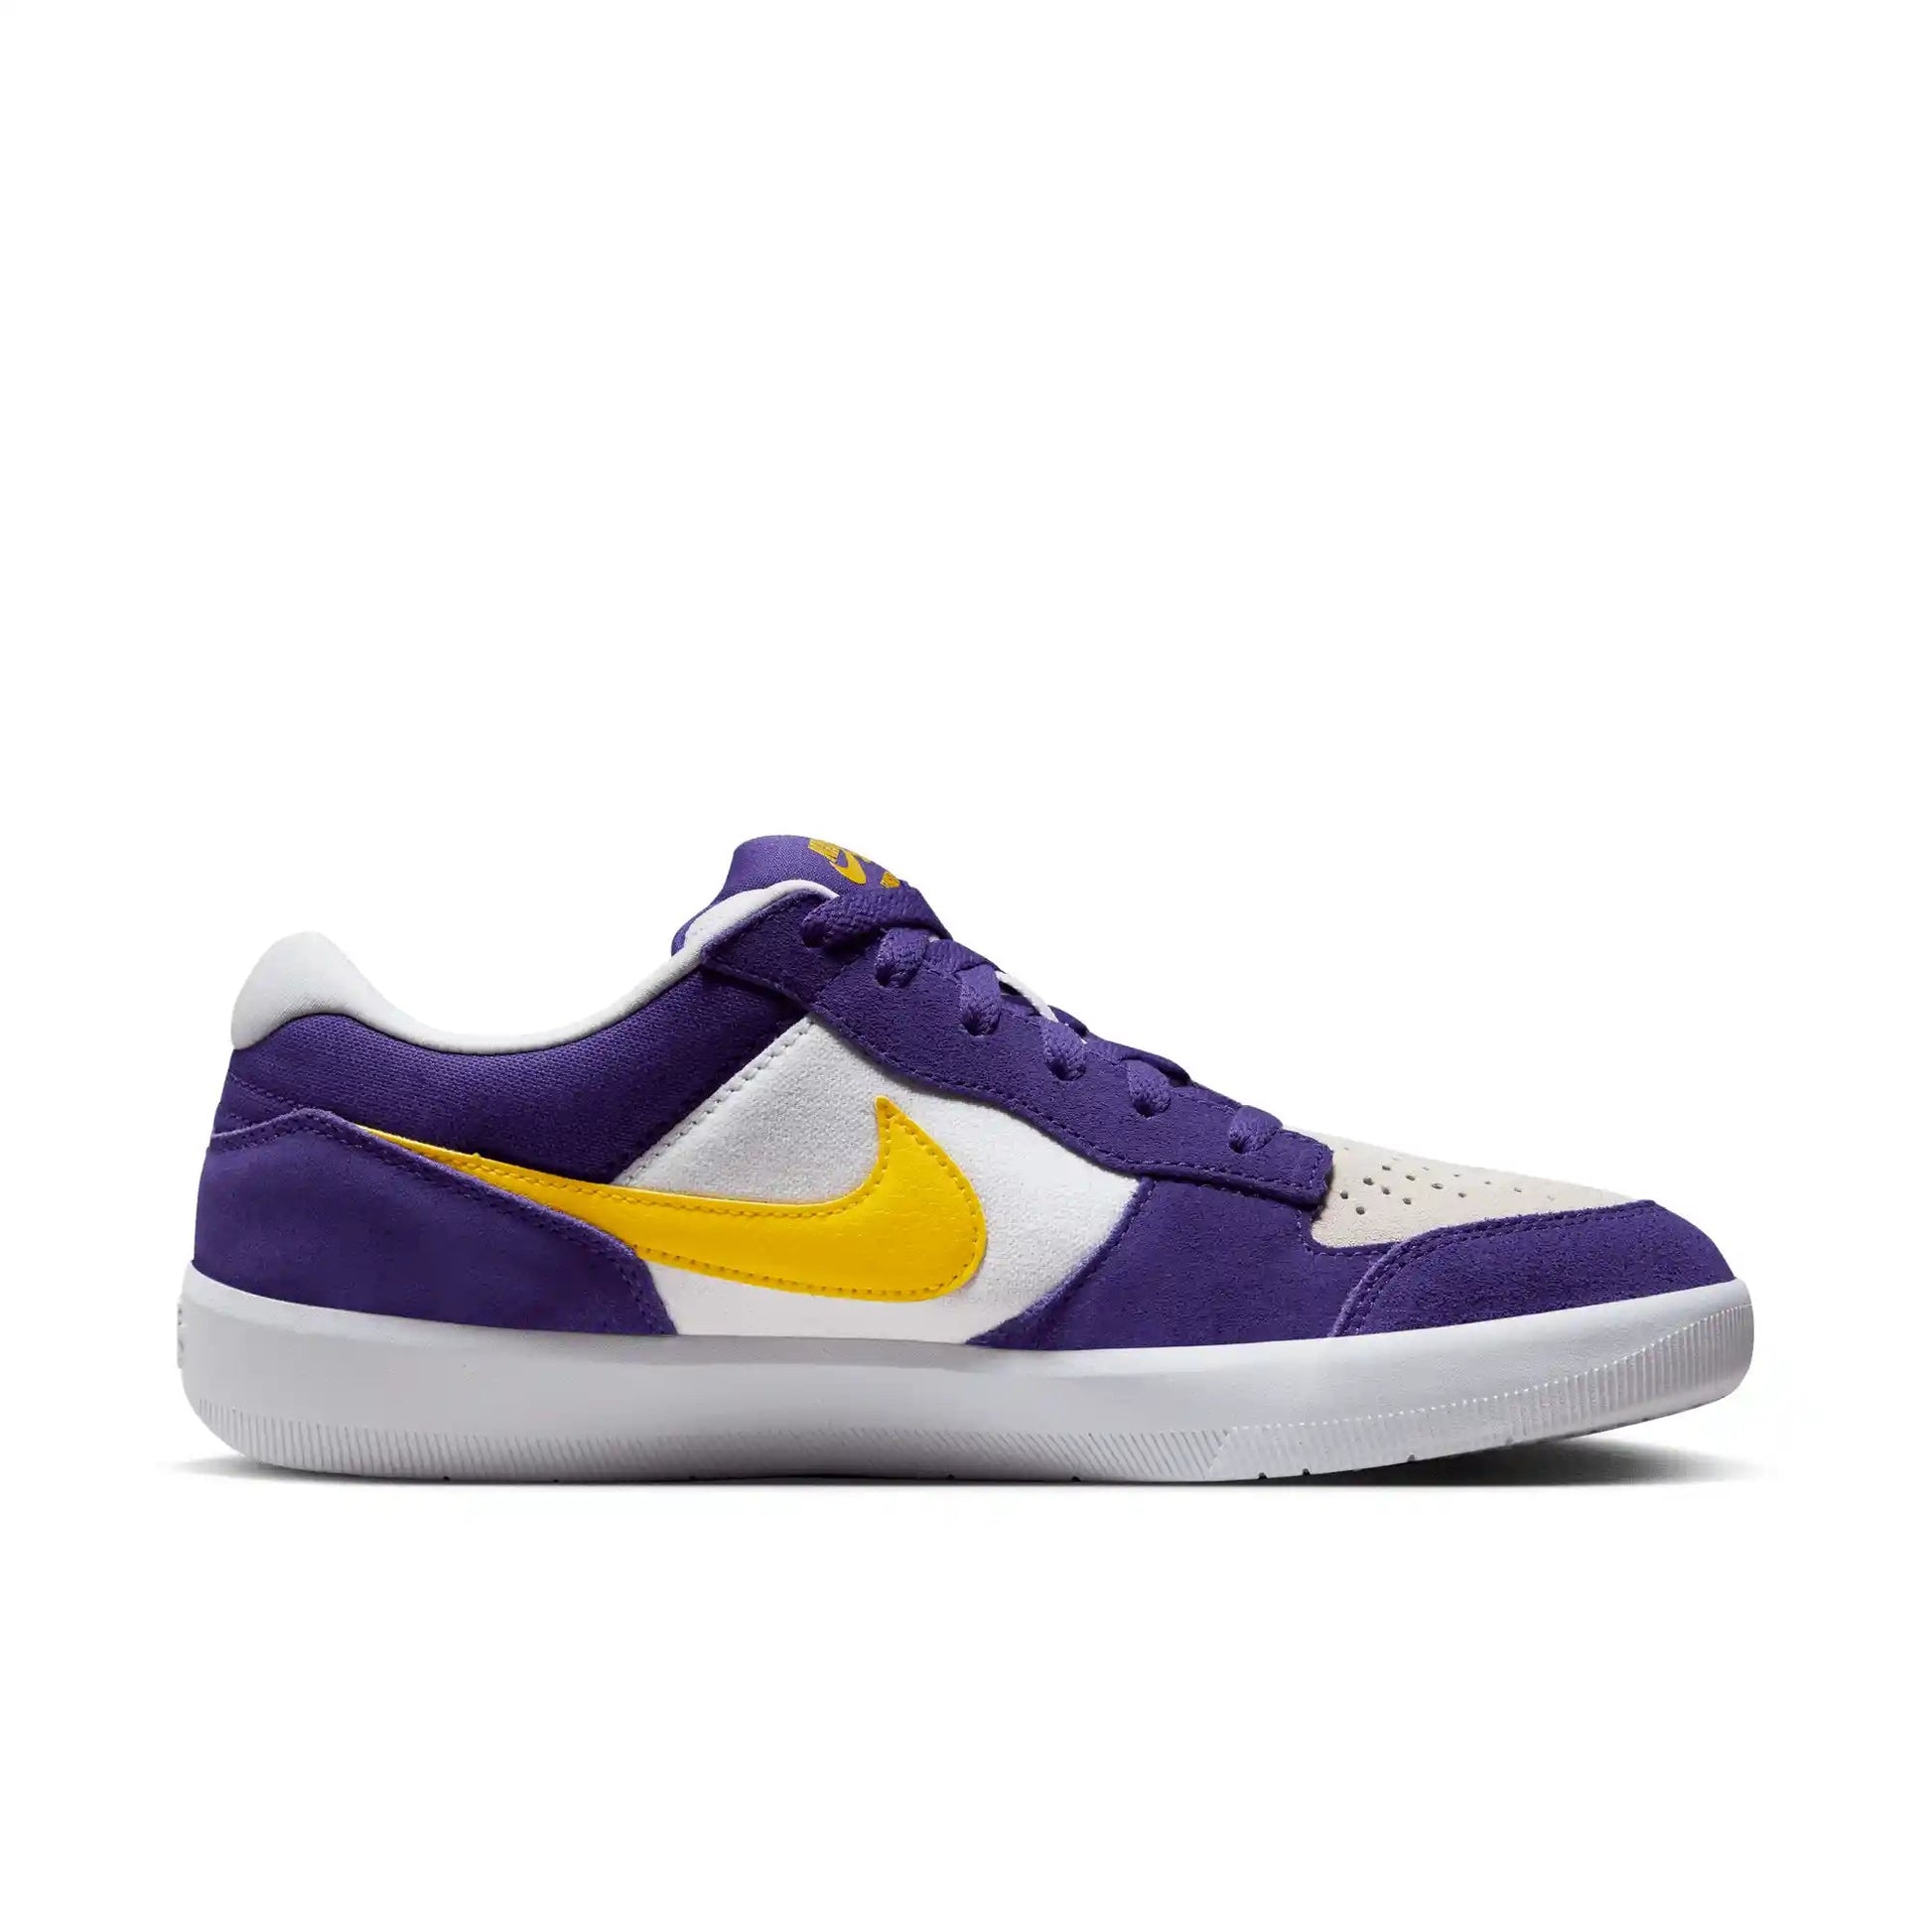 Nike SB Force 58, court purple/amarillo-white-white - Tiki Room Skateboards - 8